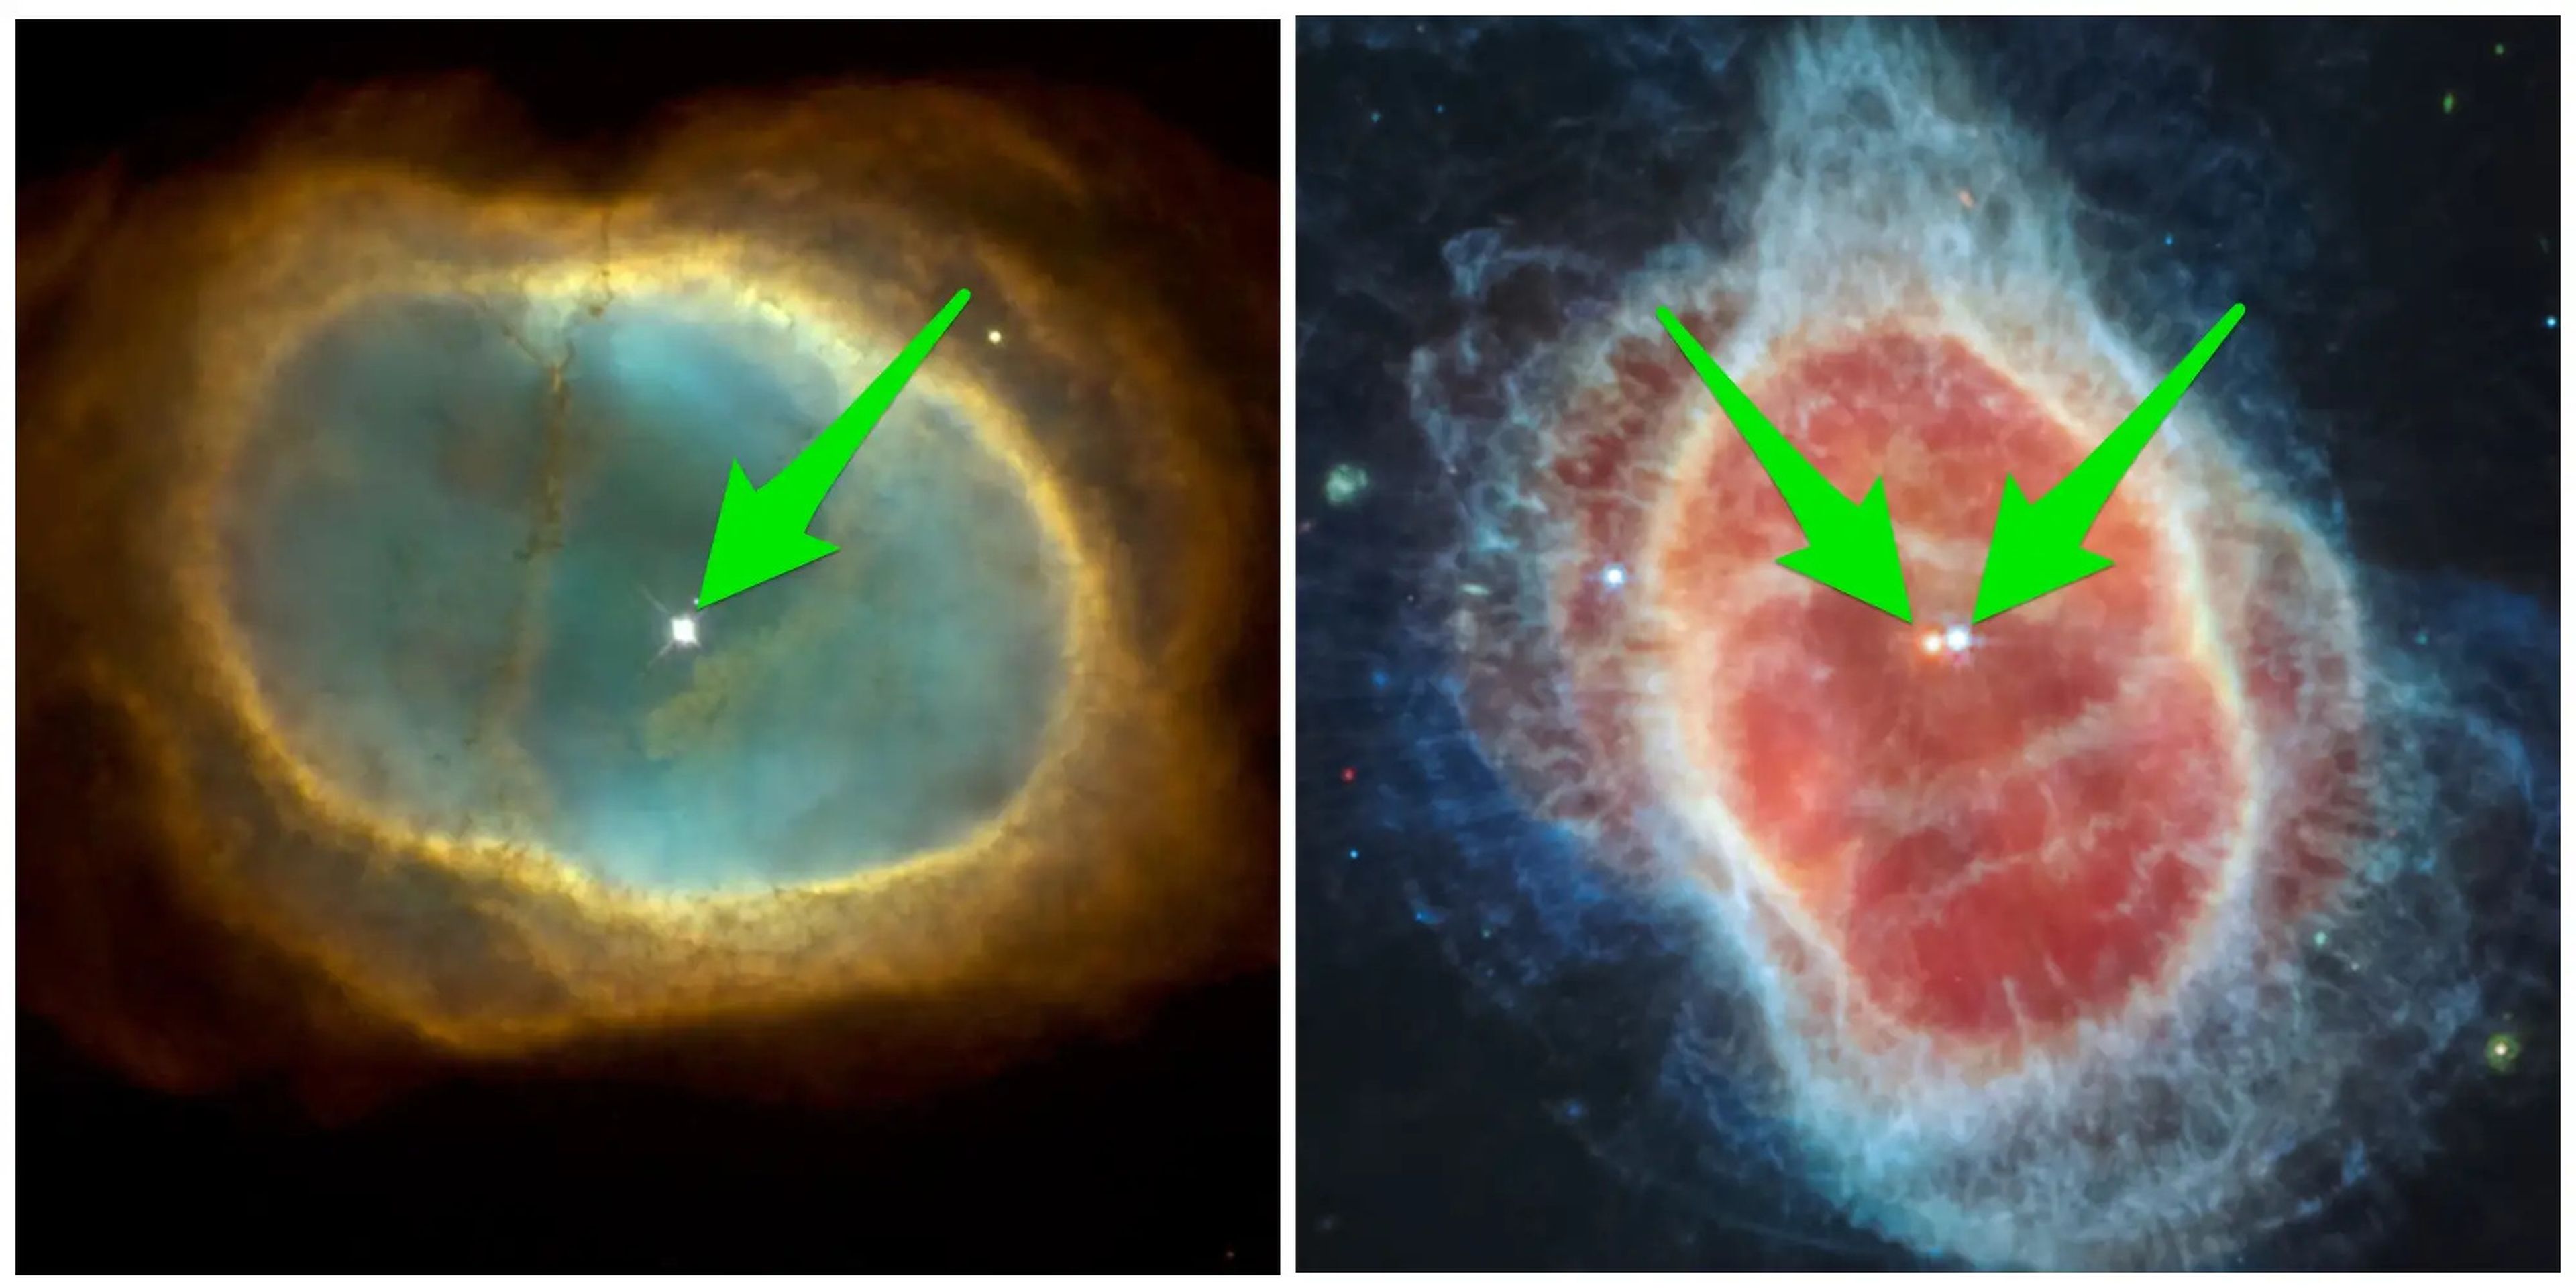 La imagen del Hubble de la Nebulosa del Anillo Sur (izquierda) tiene solo una luz en el centro, mientras que JWST (derecha) muestra claramente 2 estrellas.